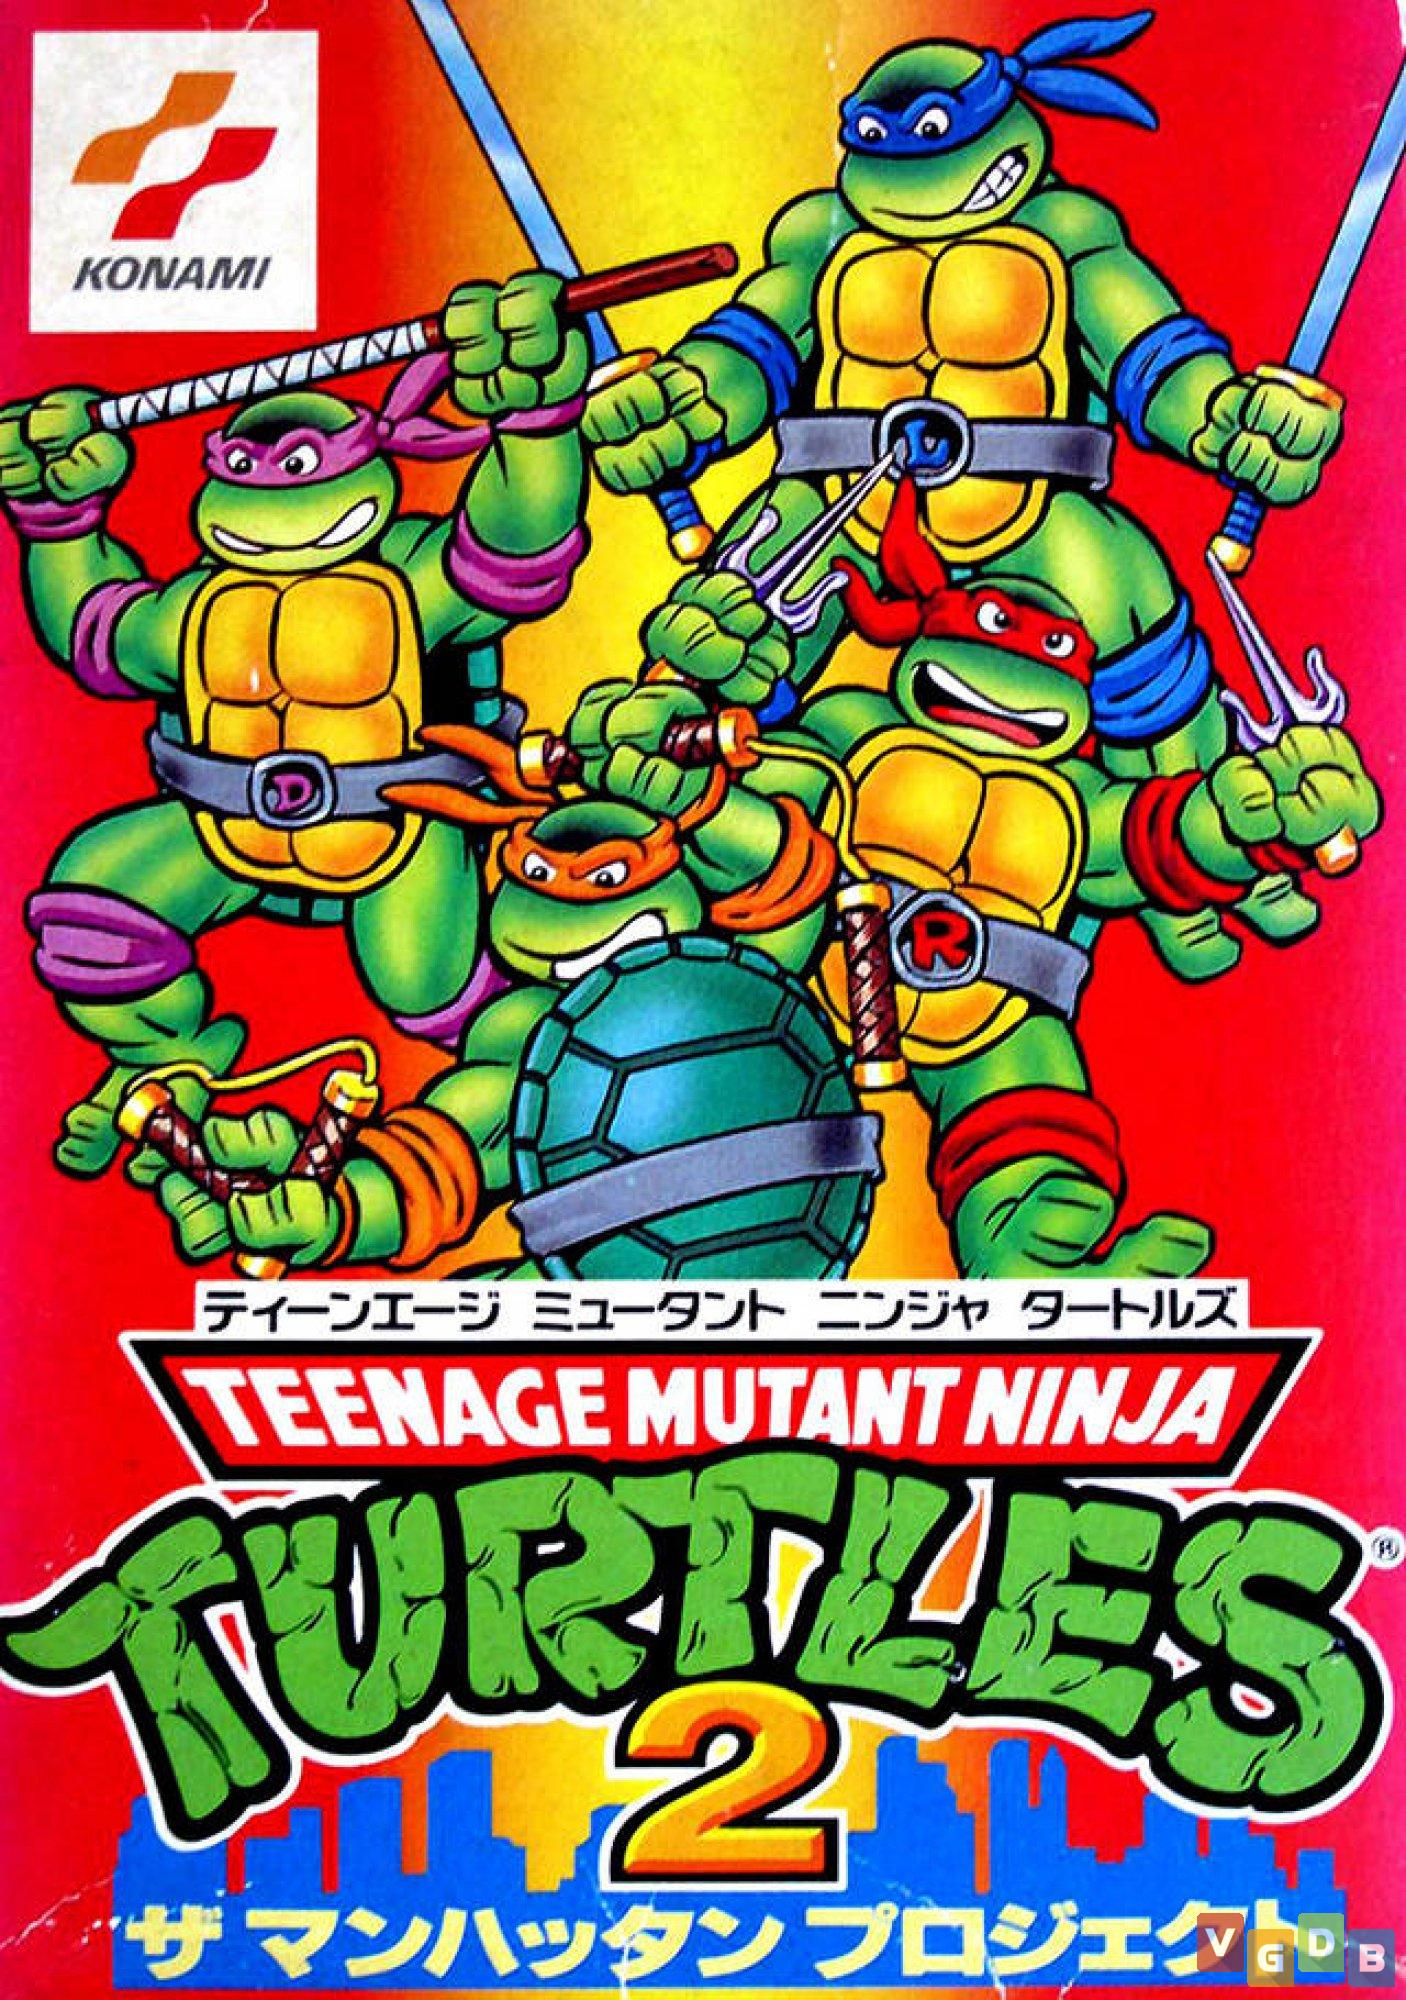 Turtles nes. Черепашки ниндзя 2 NES. Teenage Mutant Ninja Turtles 2 NES обложка. TMNT NES обложка. Turtles teenage 2 NES обложки.